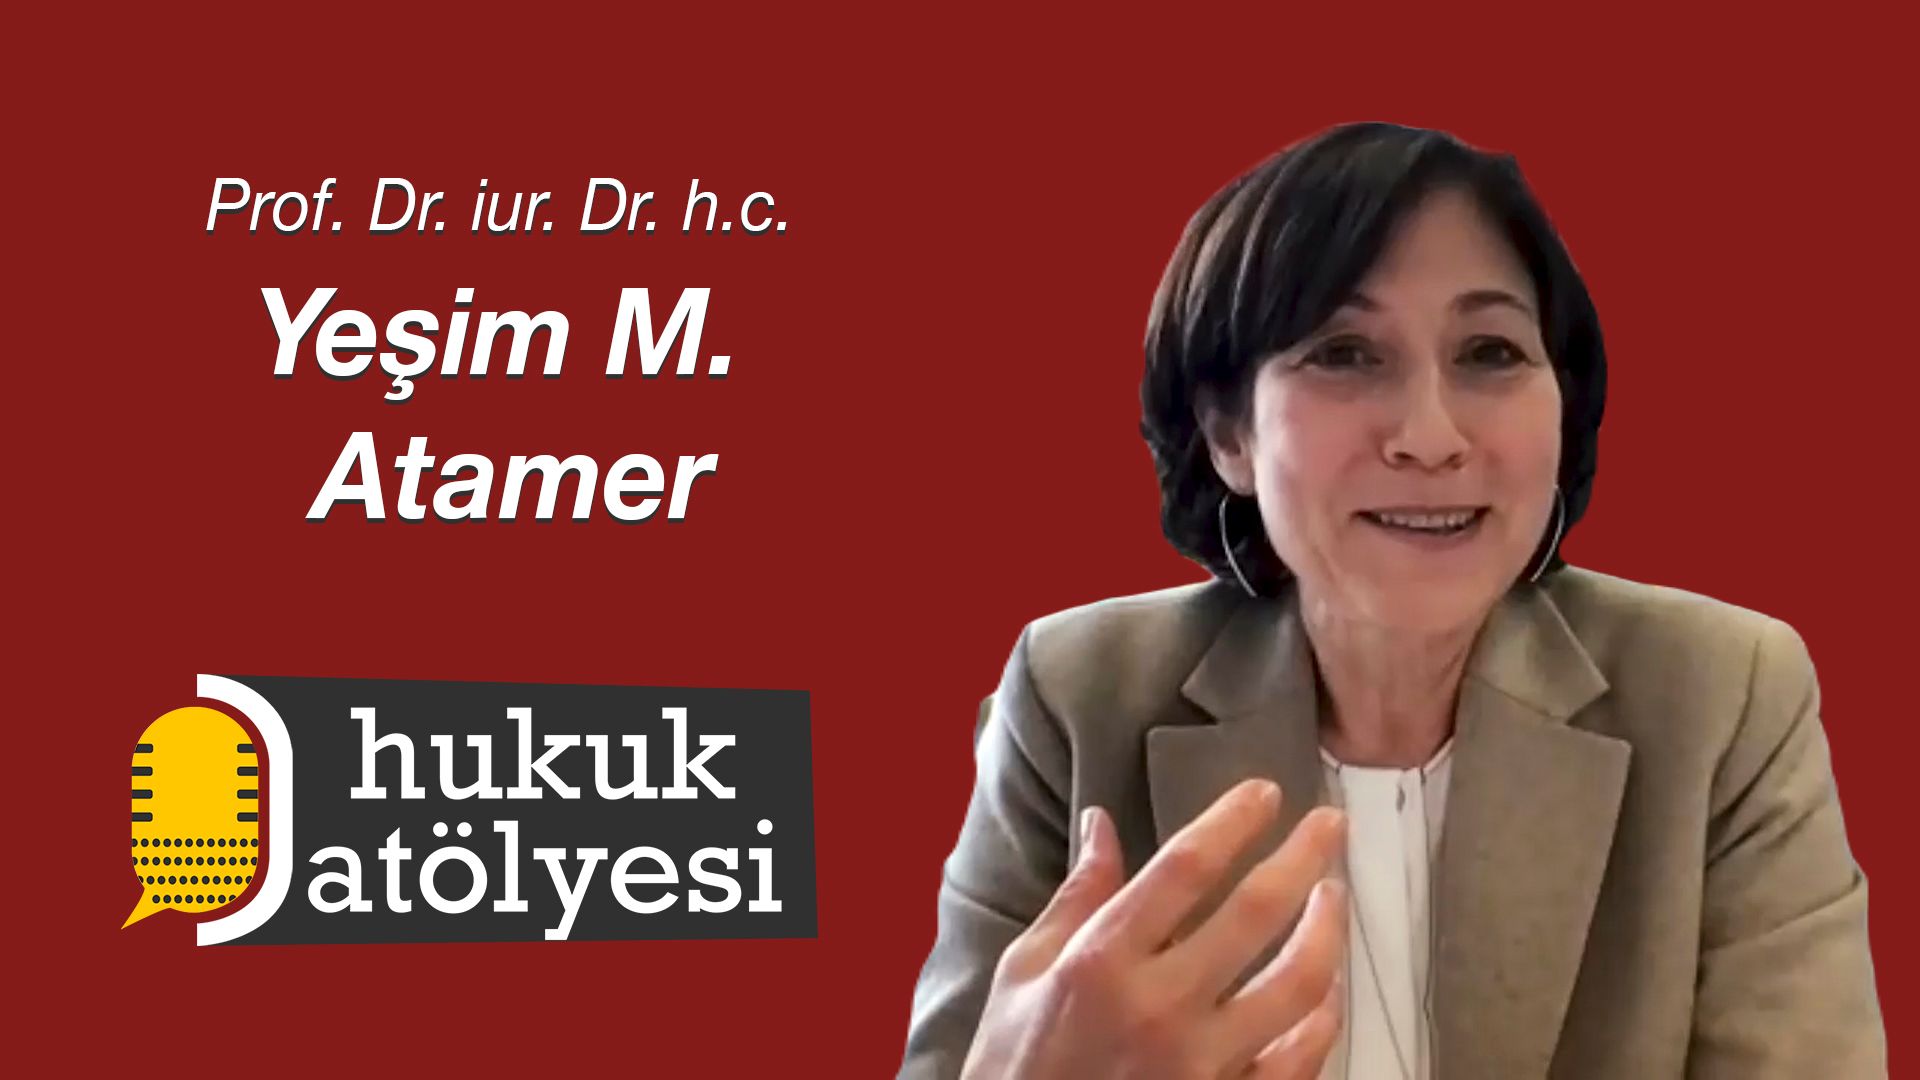 Hukuk Atölyesi #15'in Konuğu: Prof. Dr. iur. Dr. h.c. Yeşim M. Atamer